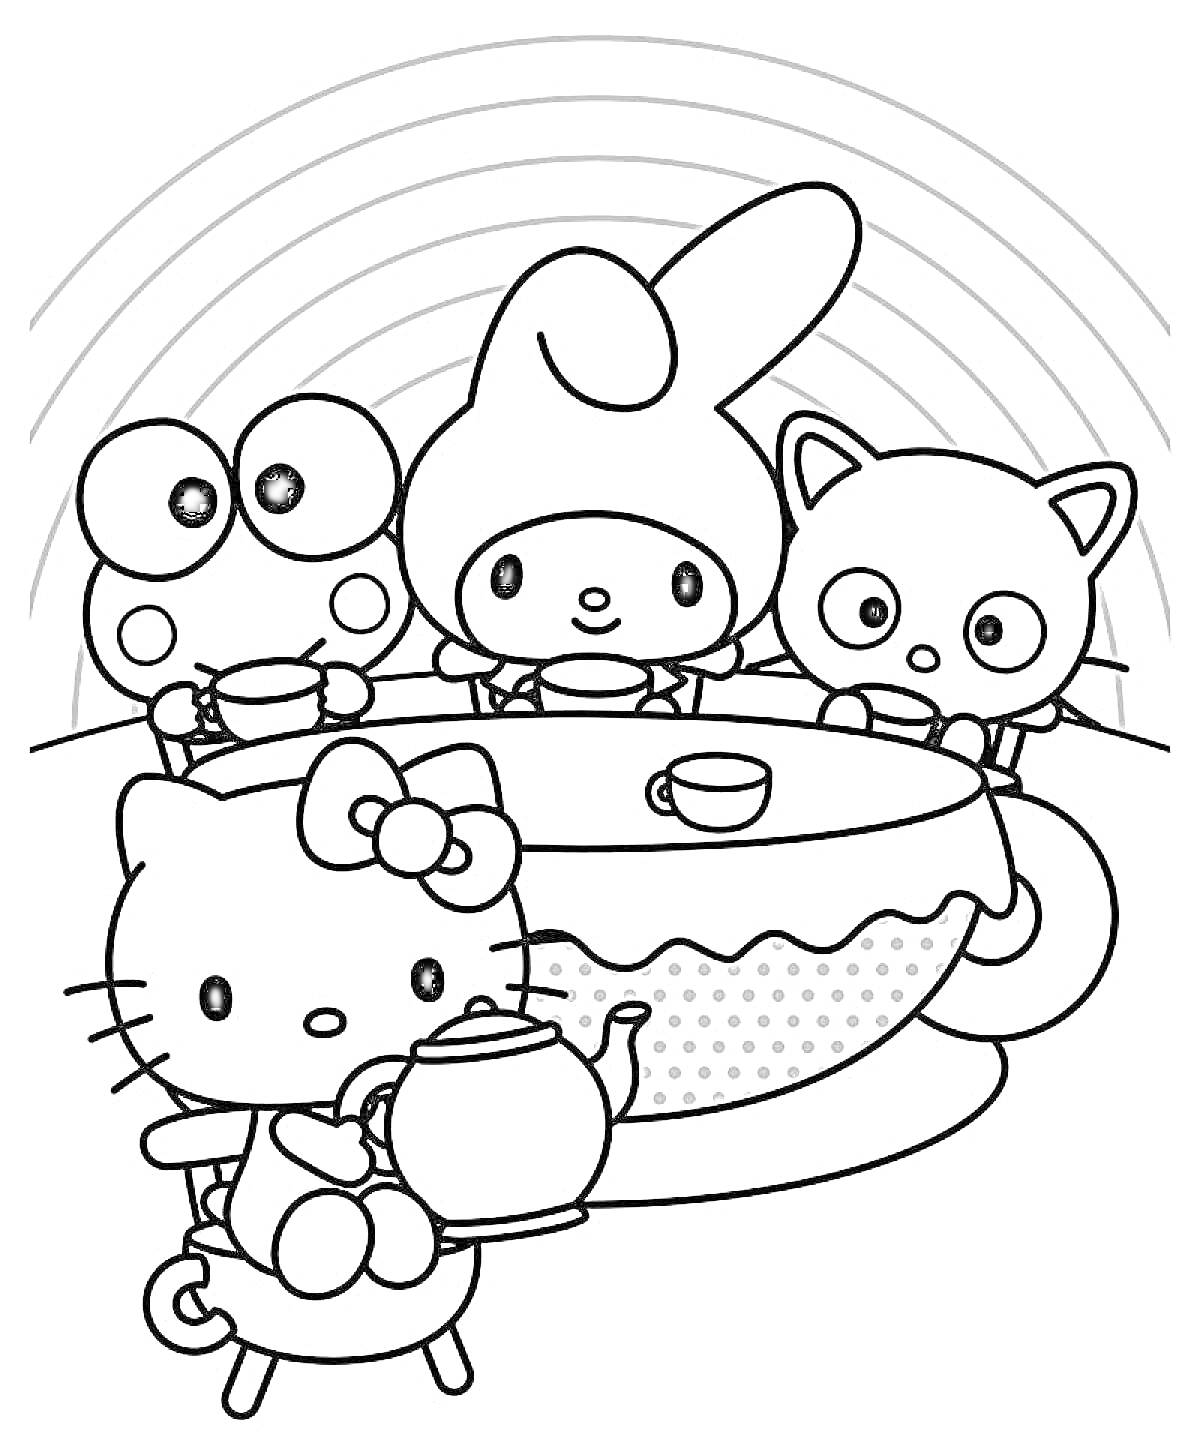 Раскраска Хелло Китти и друзья пьют чай за столом с радугой на заднем плане